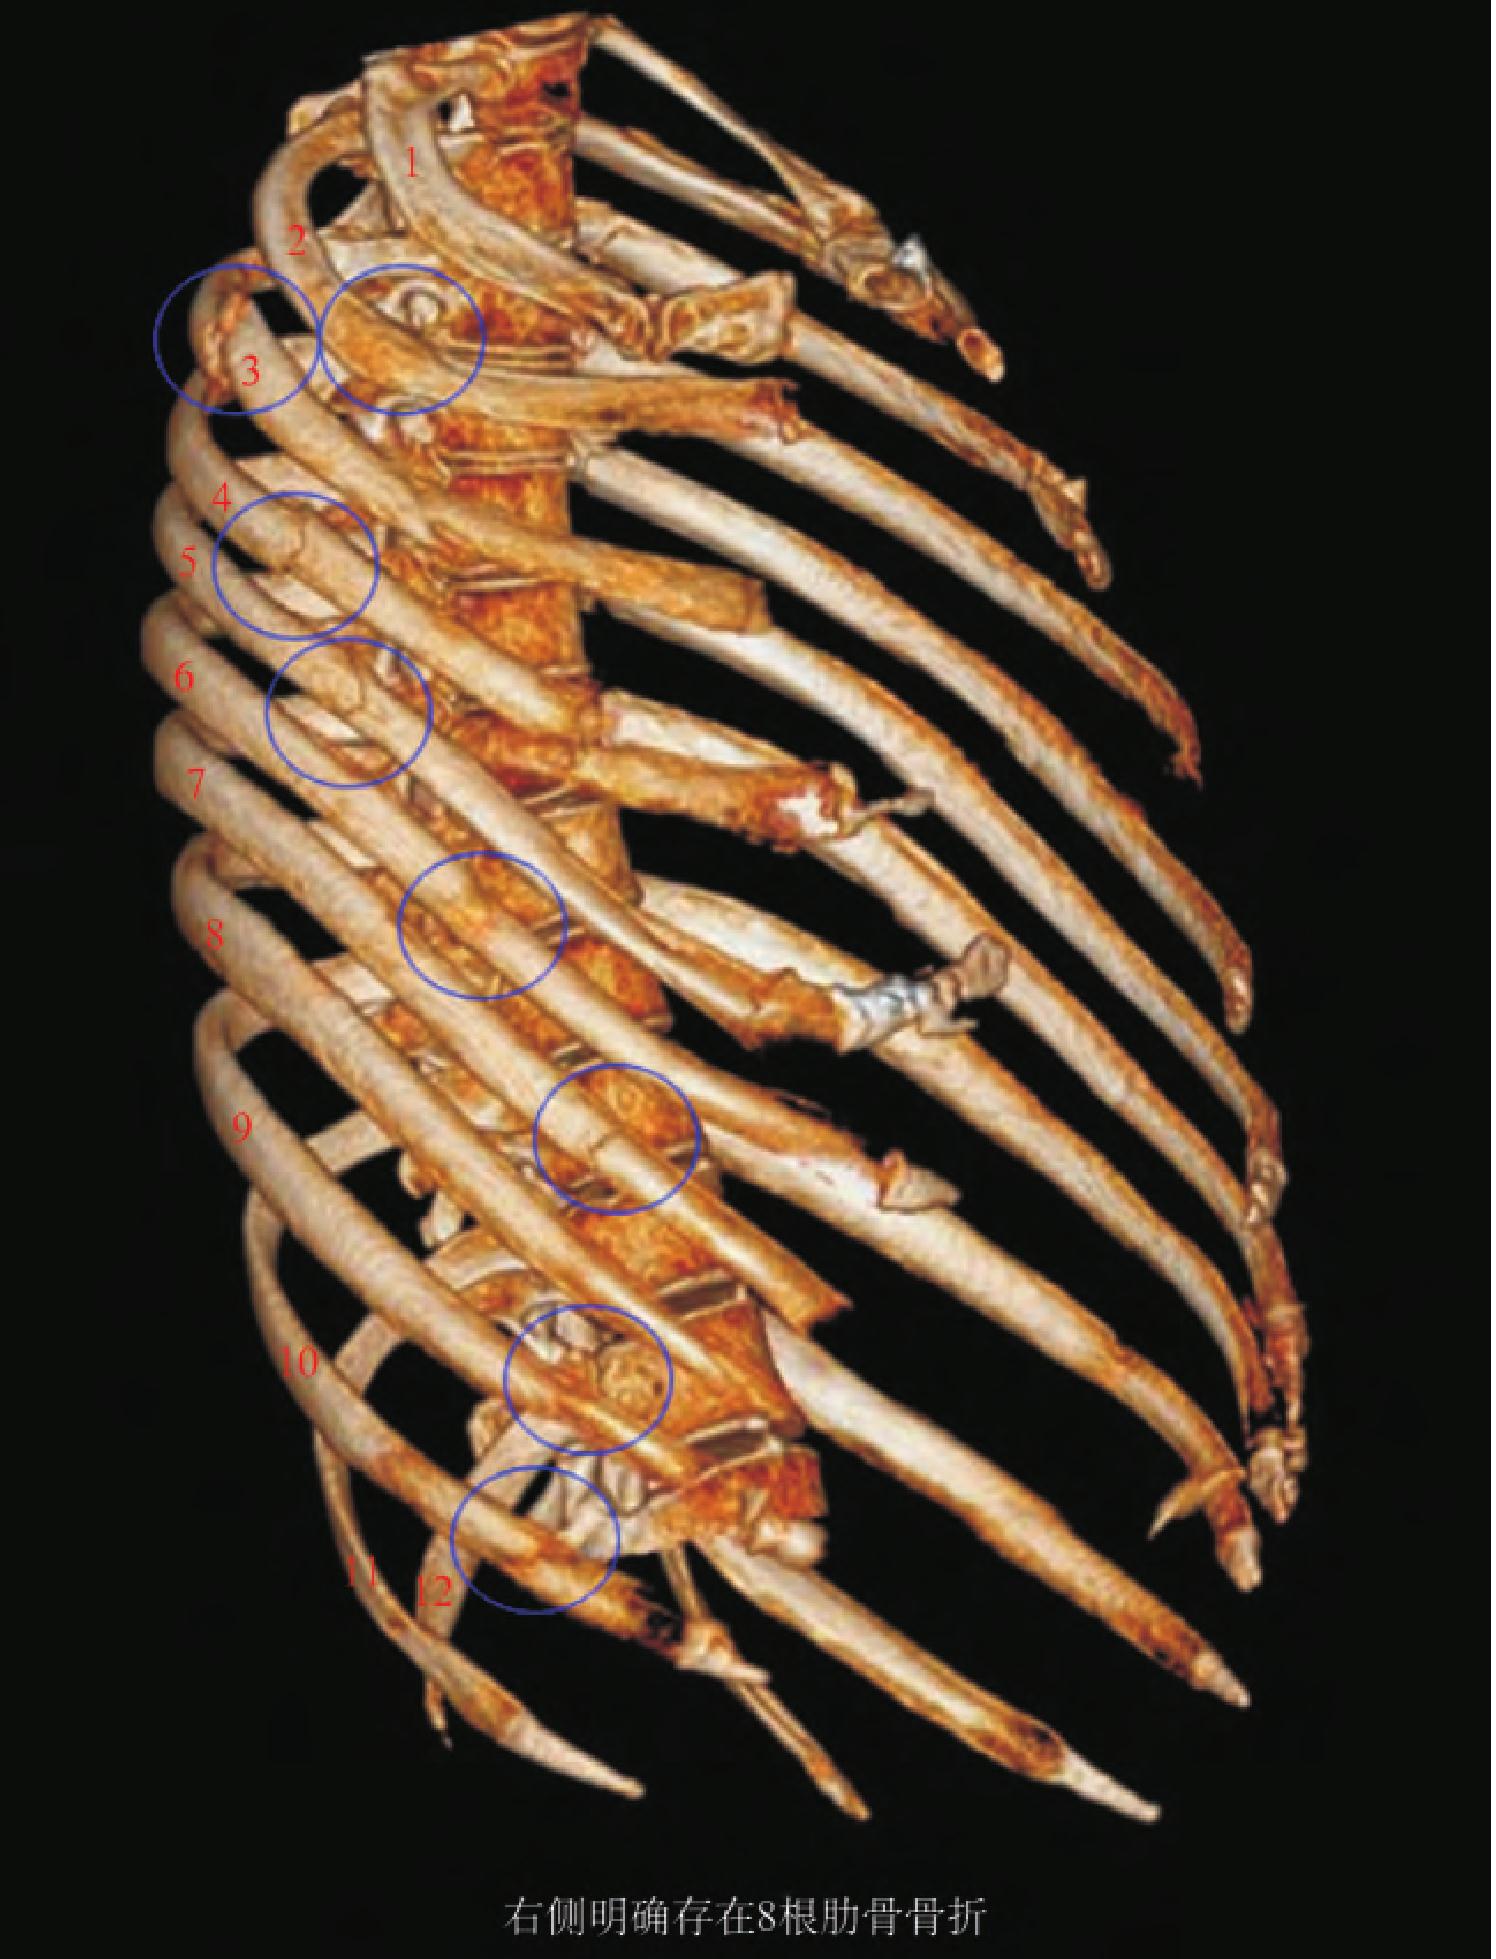 「肋骨骨折と解剖」理学療法士 田代雄斗 先生のコラム - 解剖実習アカデミー